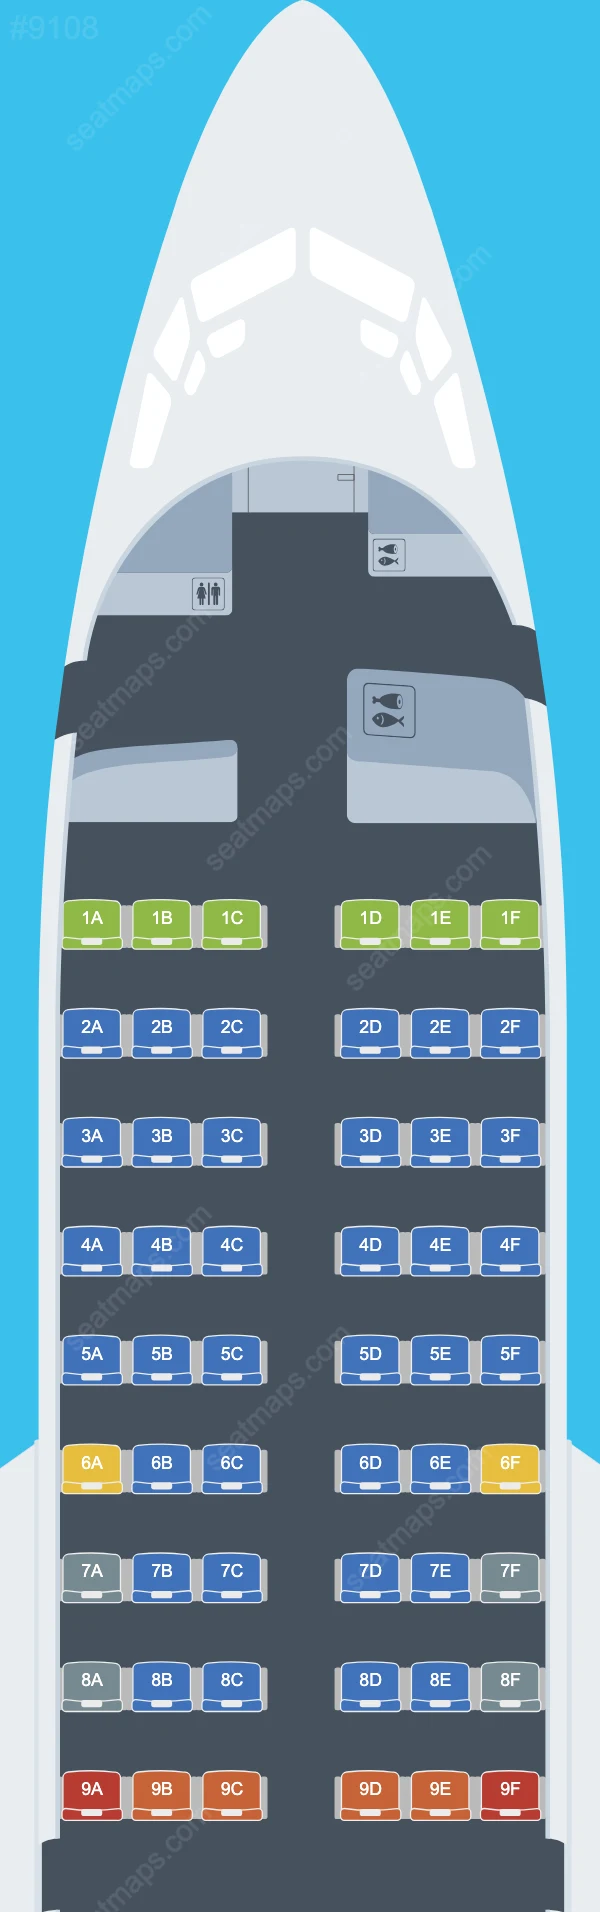 Bahamasair Boeing 737 Seat Maps 737-500